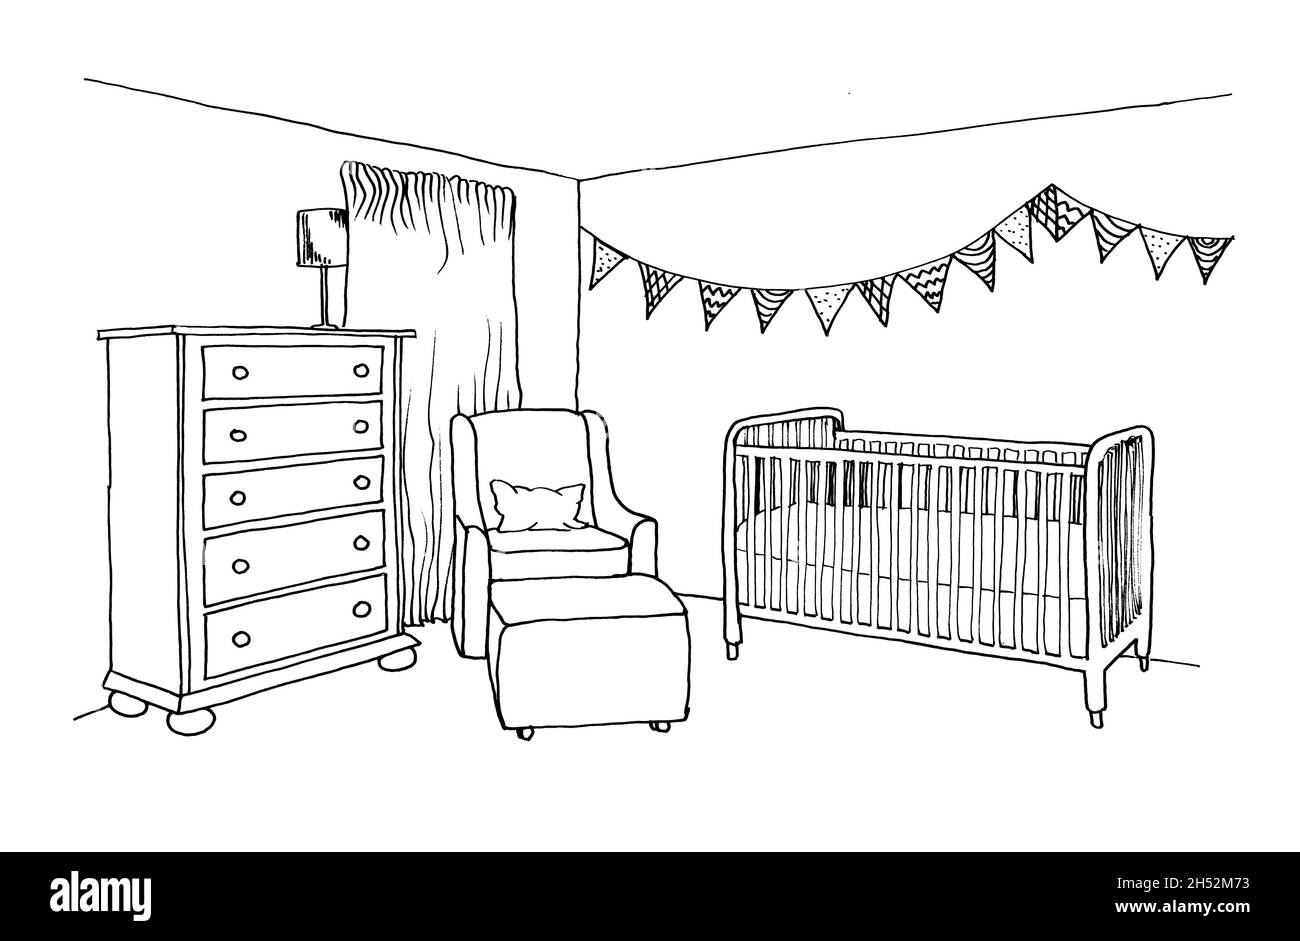 Dibujo gráfico de una habitación interior para niños con cuna, ventana,  sillón y cómoda Fotografía de stock - Alamy